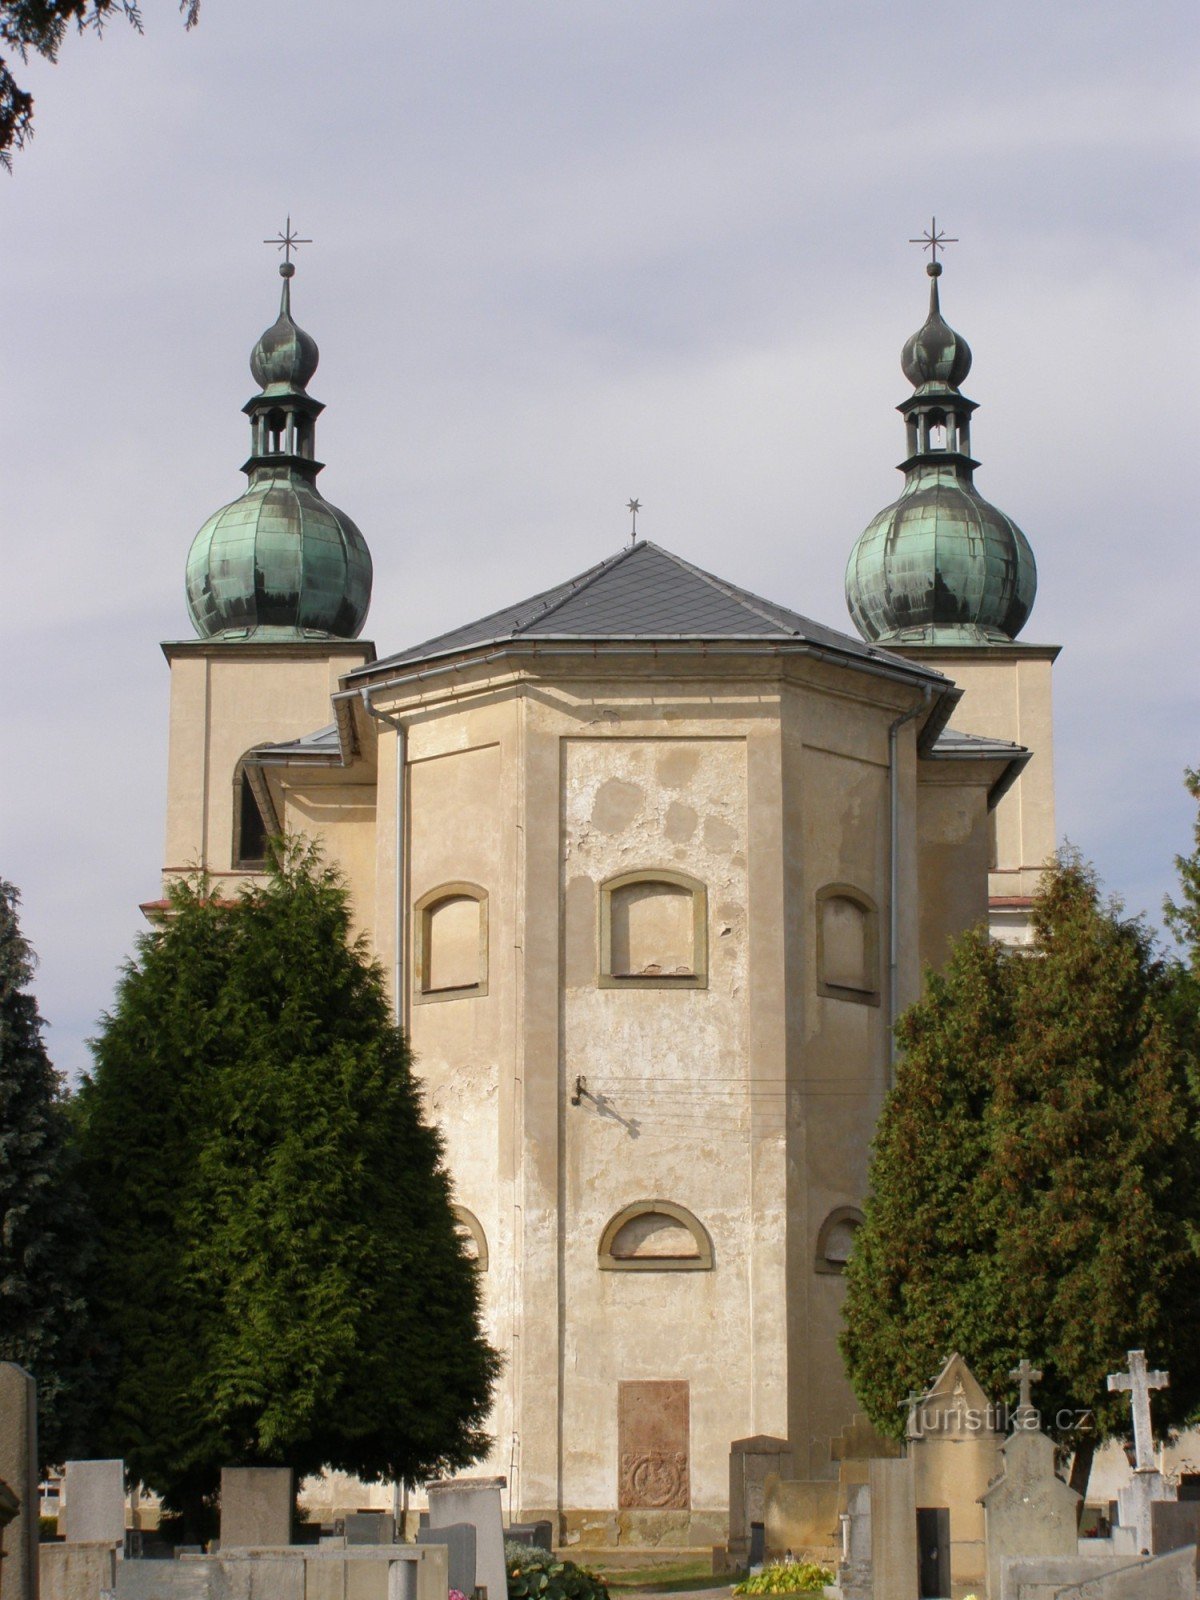 Kostelec nad Orlicí - Pyhän Nikolauksen kirkko. Anne